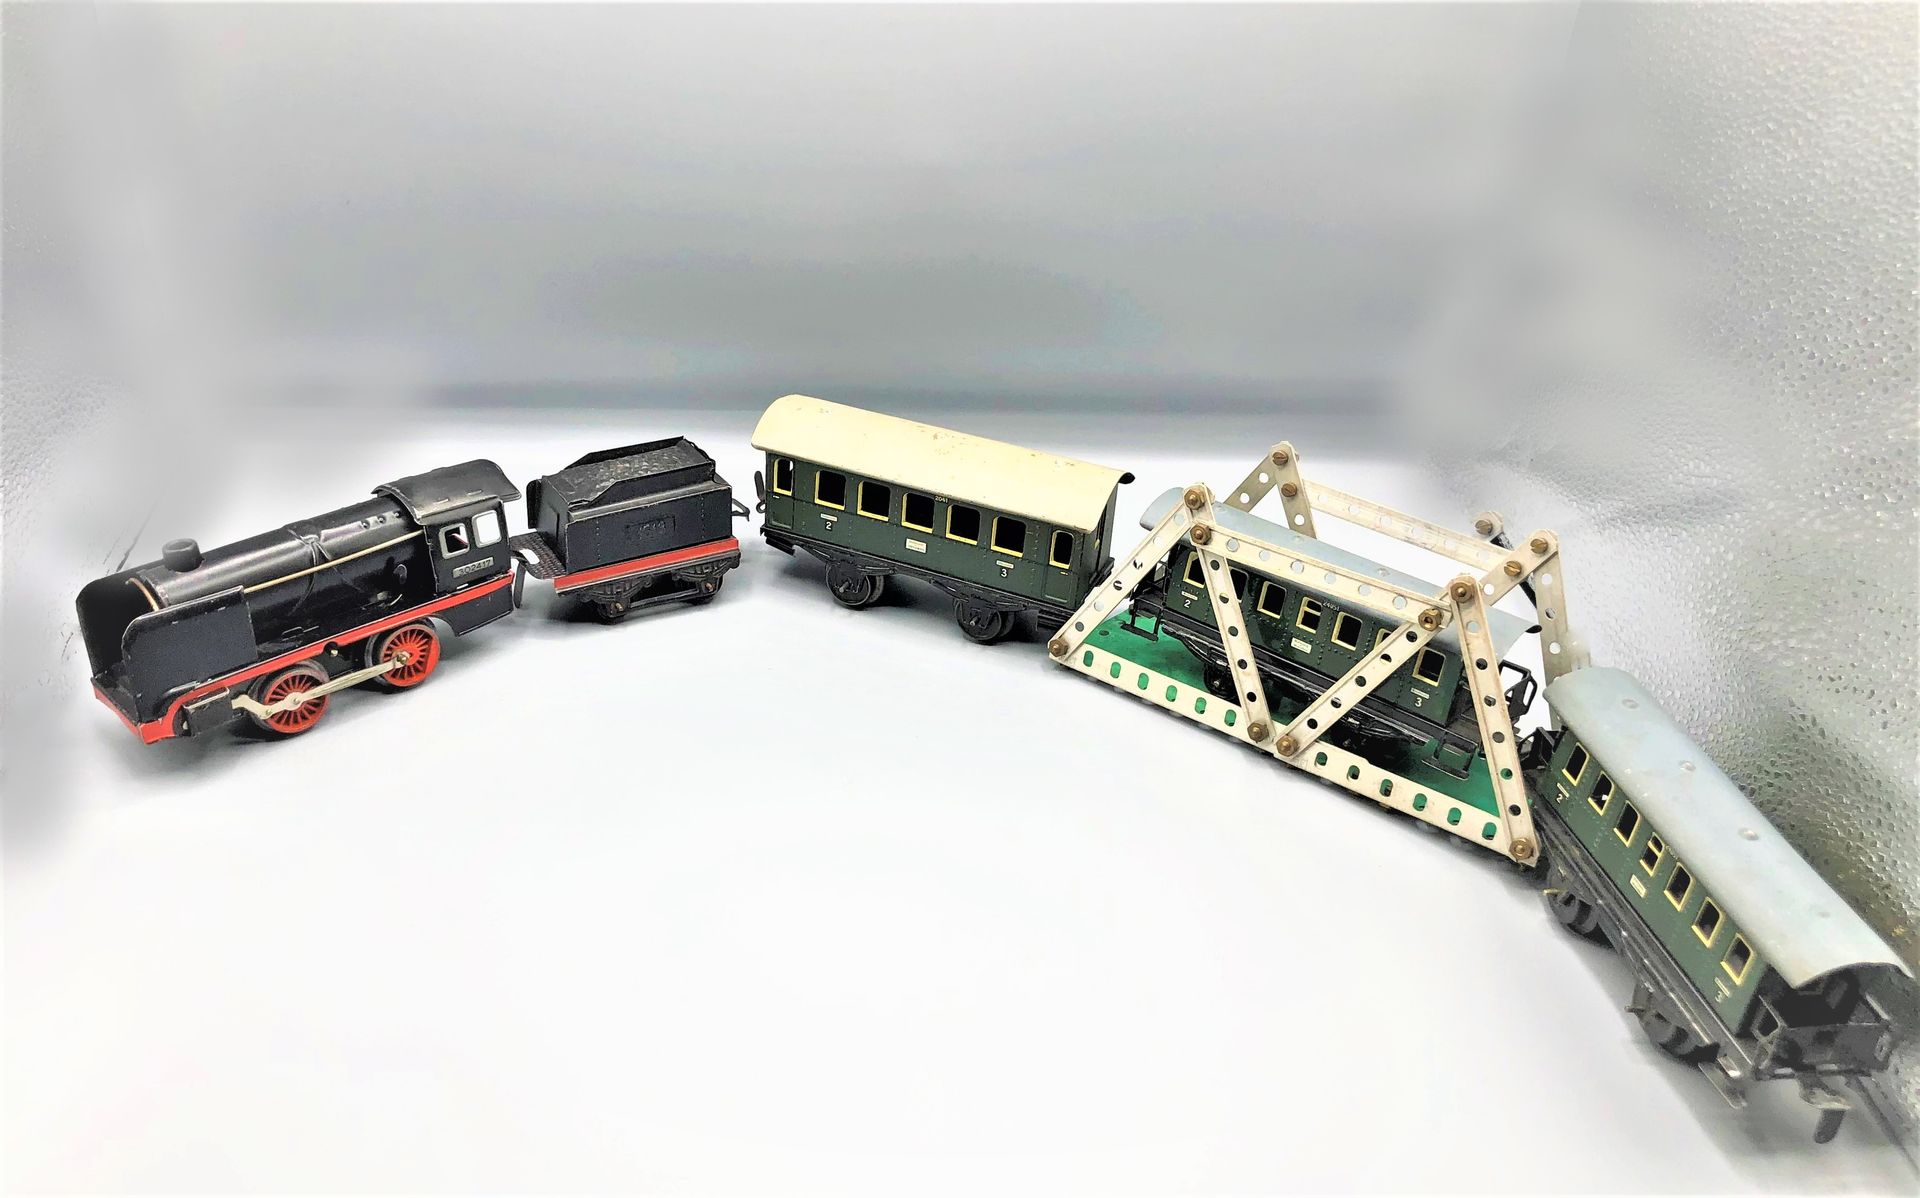 Null 杂项 -0-

机械式客运列车，包括机车020和标车以及3辆客车

1950 - 1960



使用状况

更多信息请联系该研究。